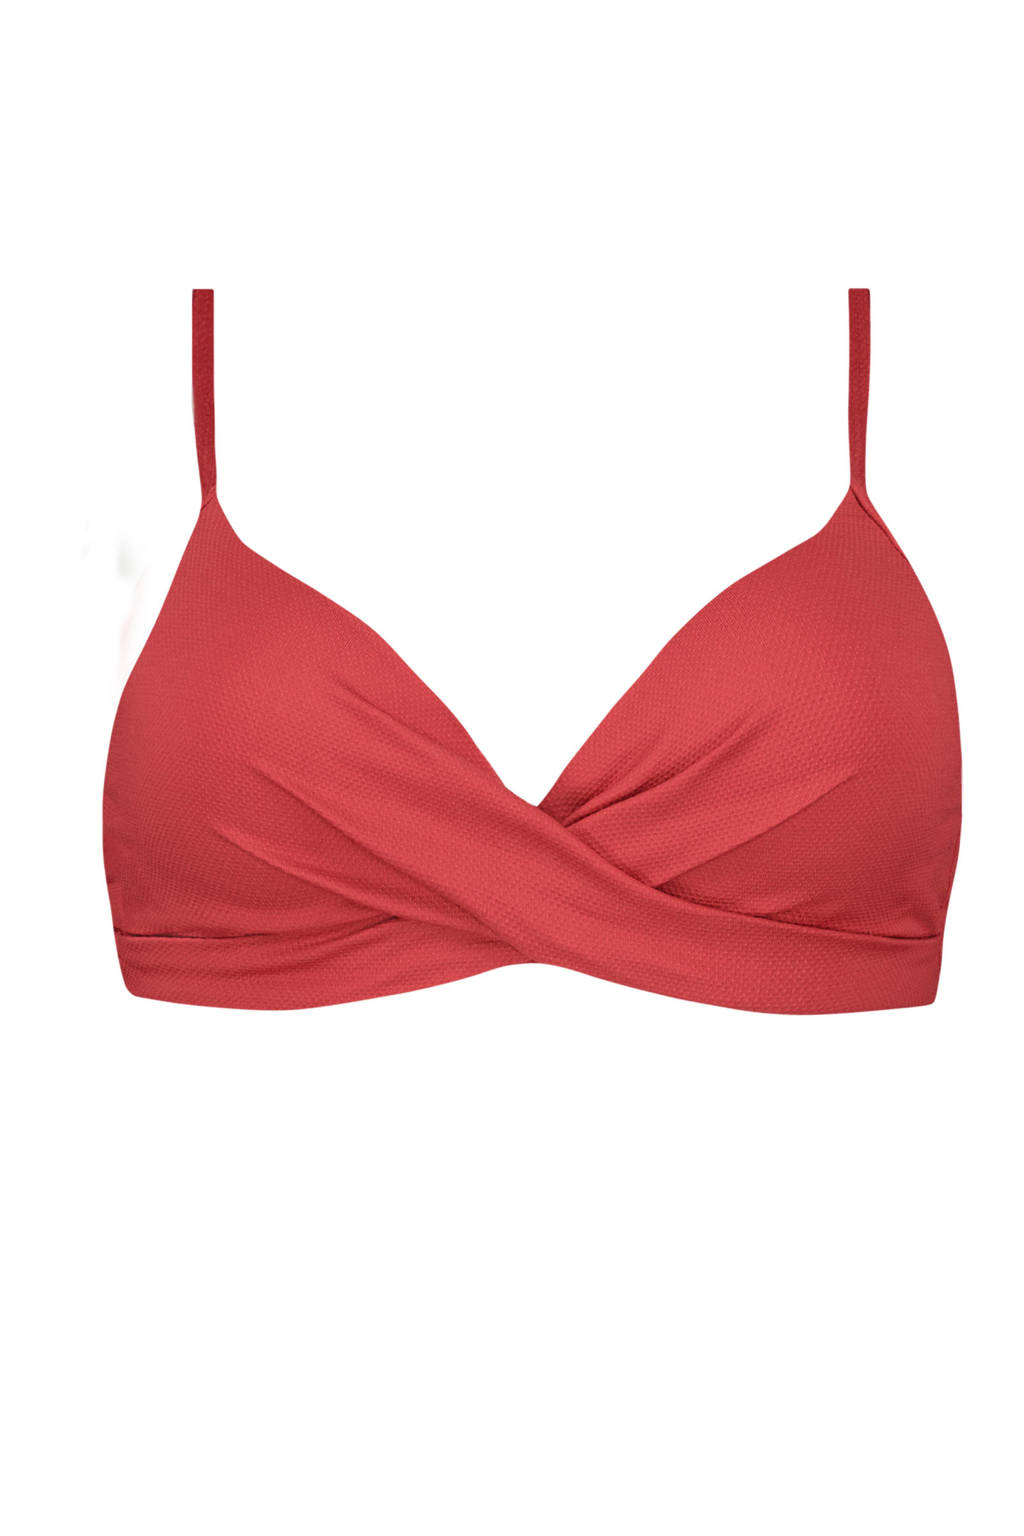 Beachlife voorgevormde beugel bikinitop rood